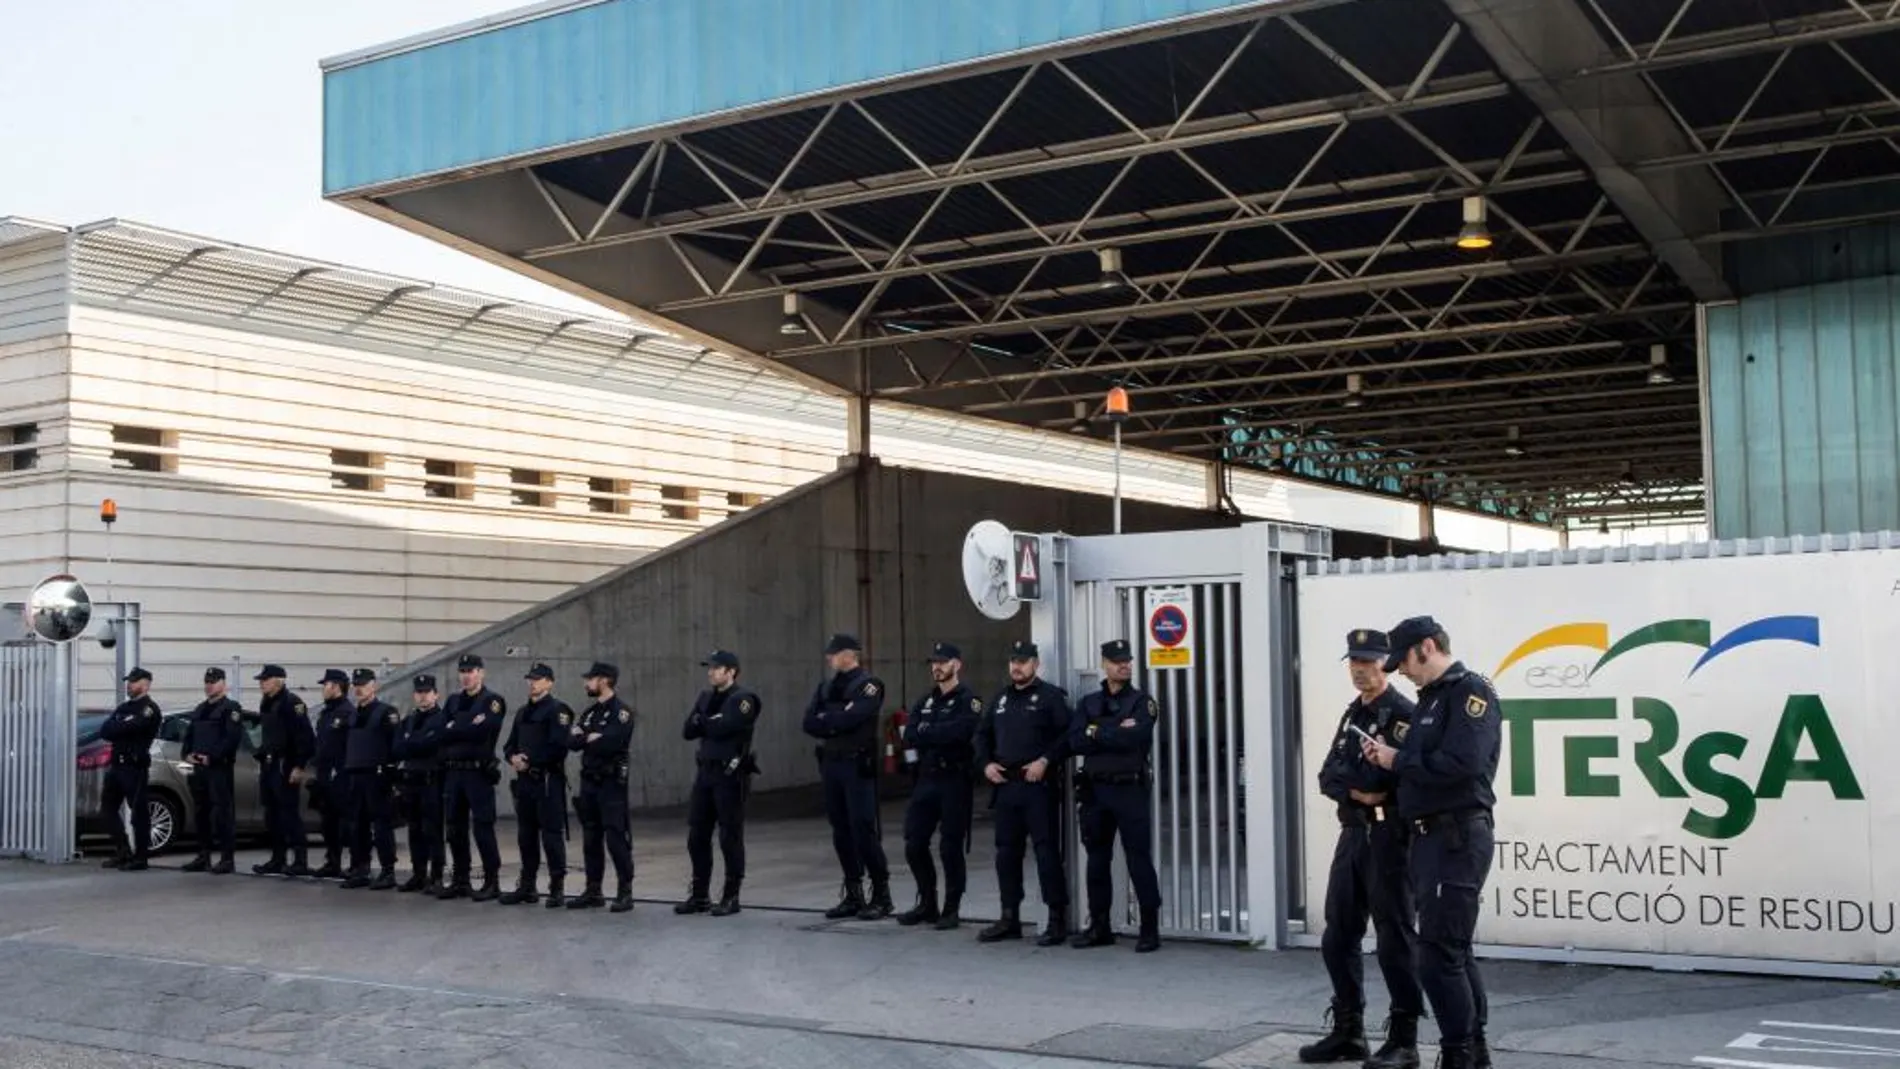 La Policía Nacional en la incineradora de Sant Adrià de Besòs (Barcelona). Los Mossos han acudido a la incineradora con el objetivo de quemar unos documentos con información sensible /Efe